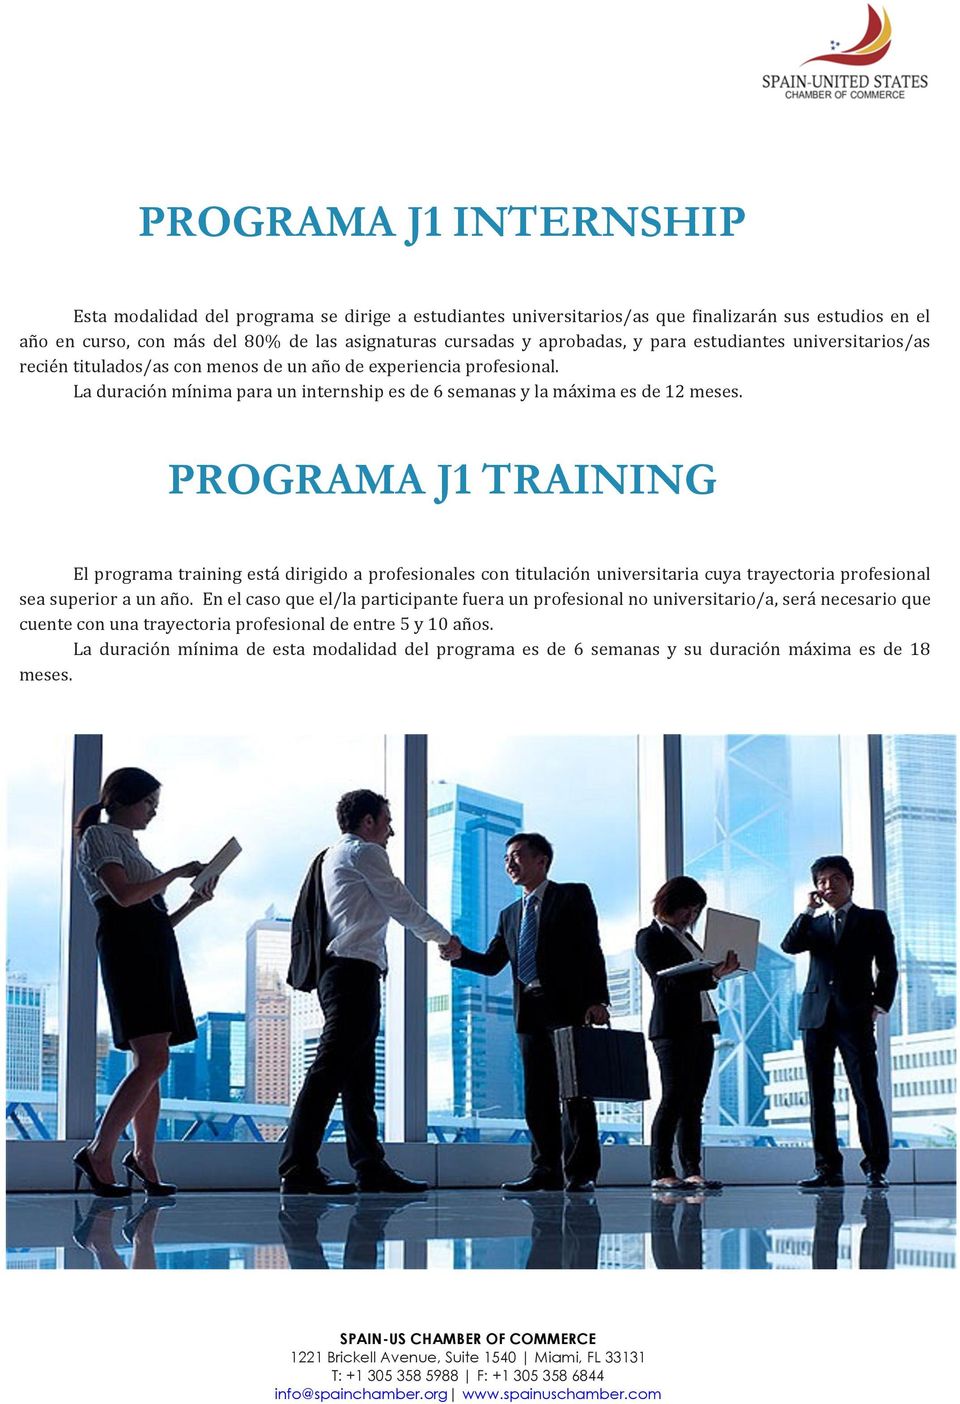 PROGRAMA J1 TRAINING El programa training está dirigido a profesionales con titulación universitaria cuya trayectoria profesional sea superior a un año.